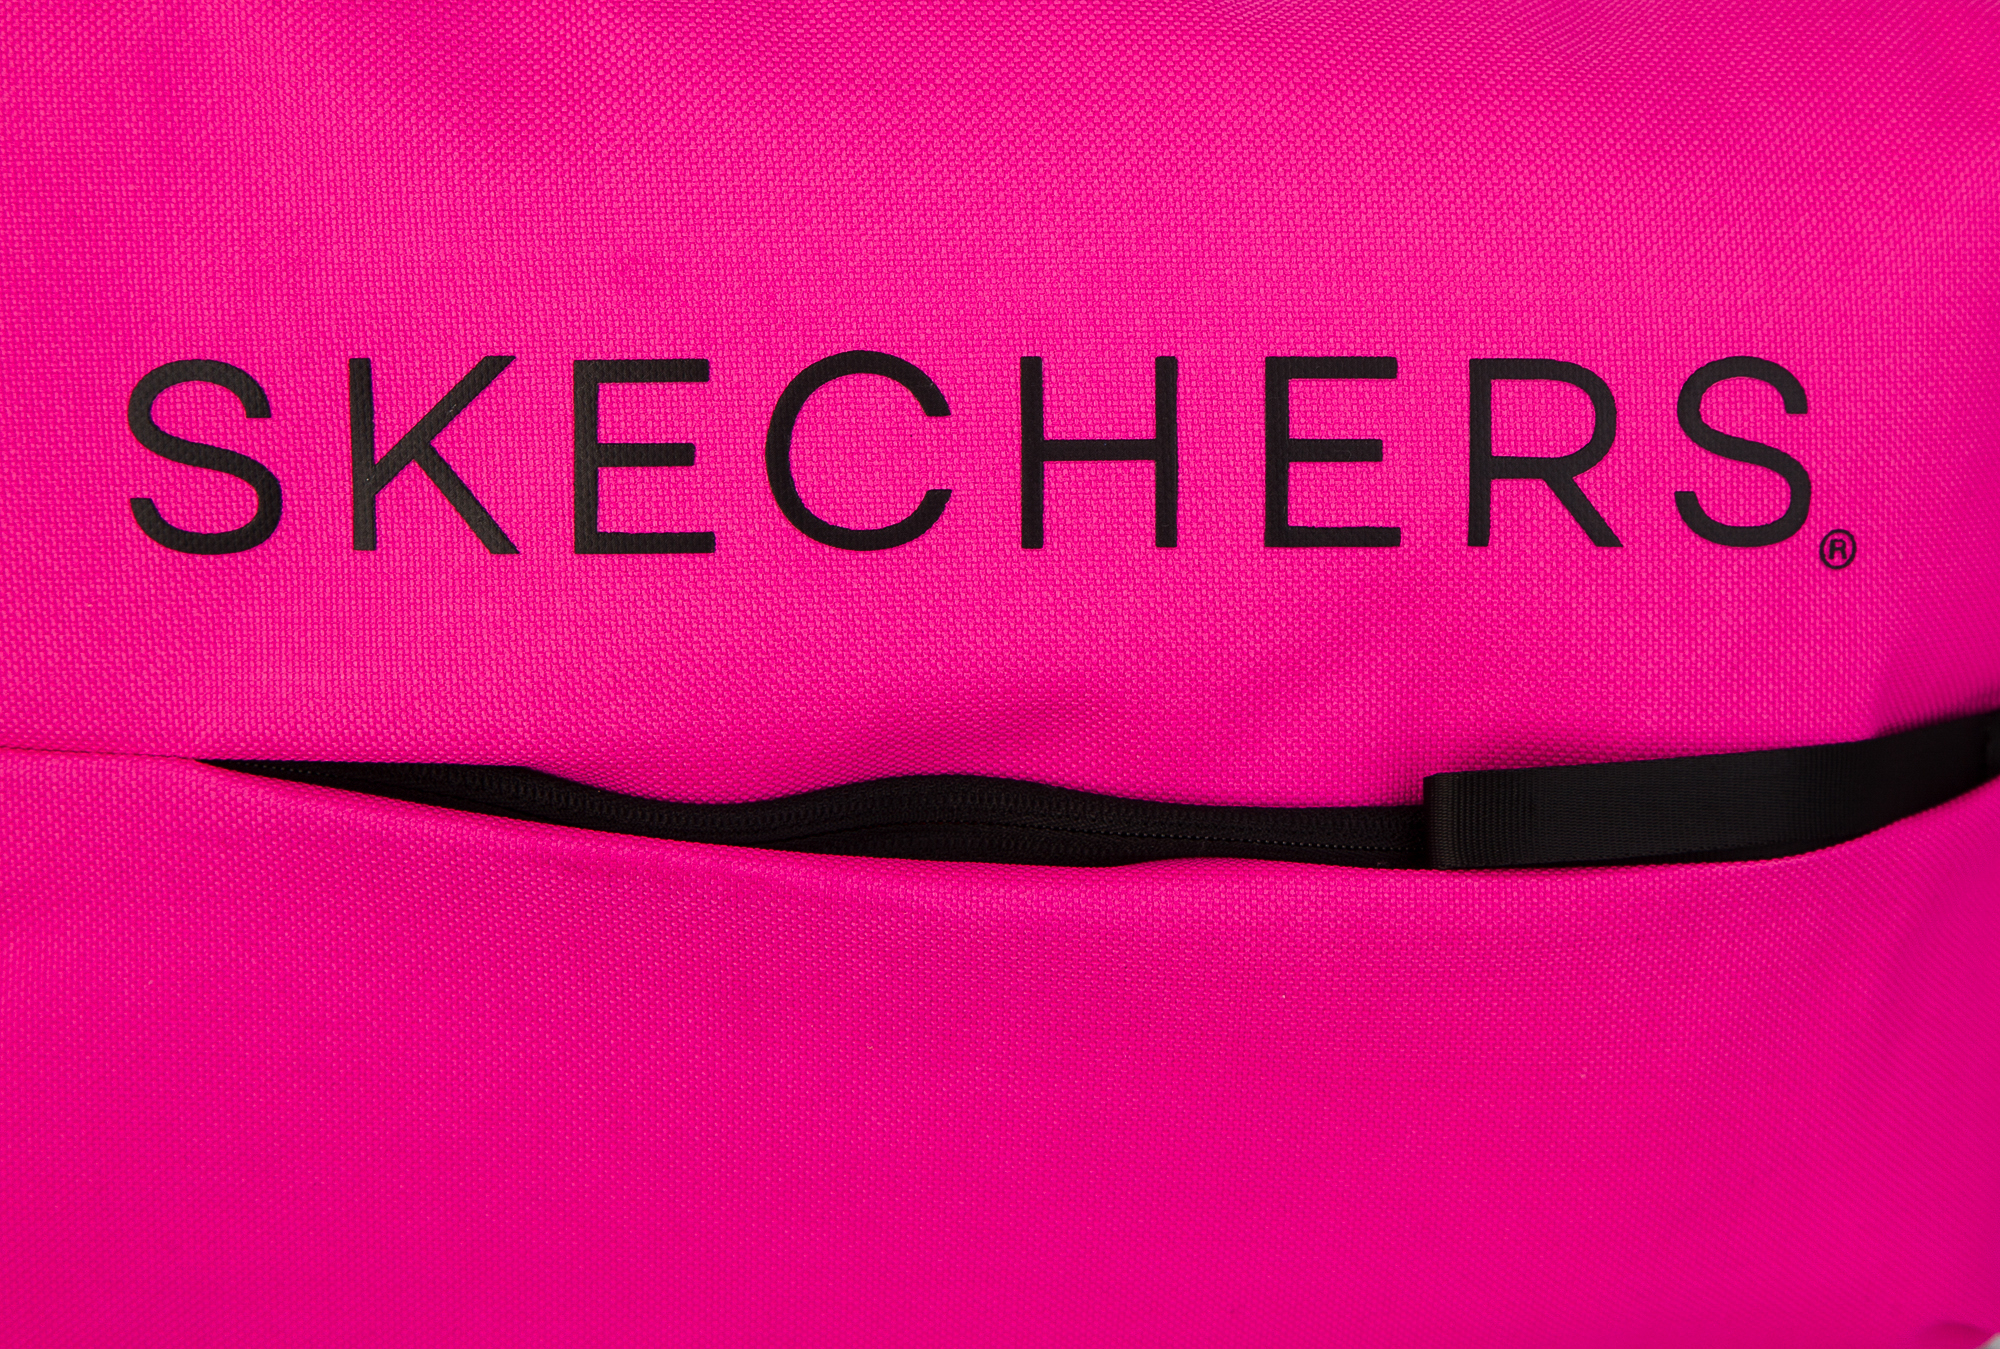 Рюкзак женский Skechers